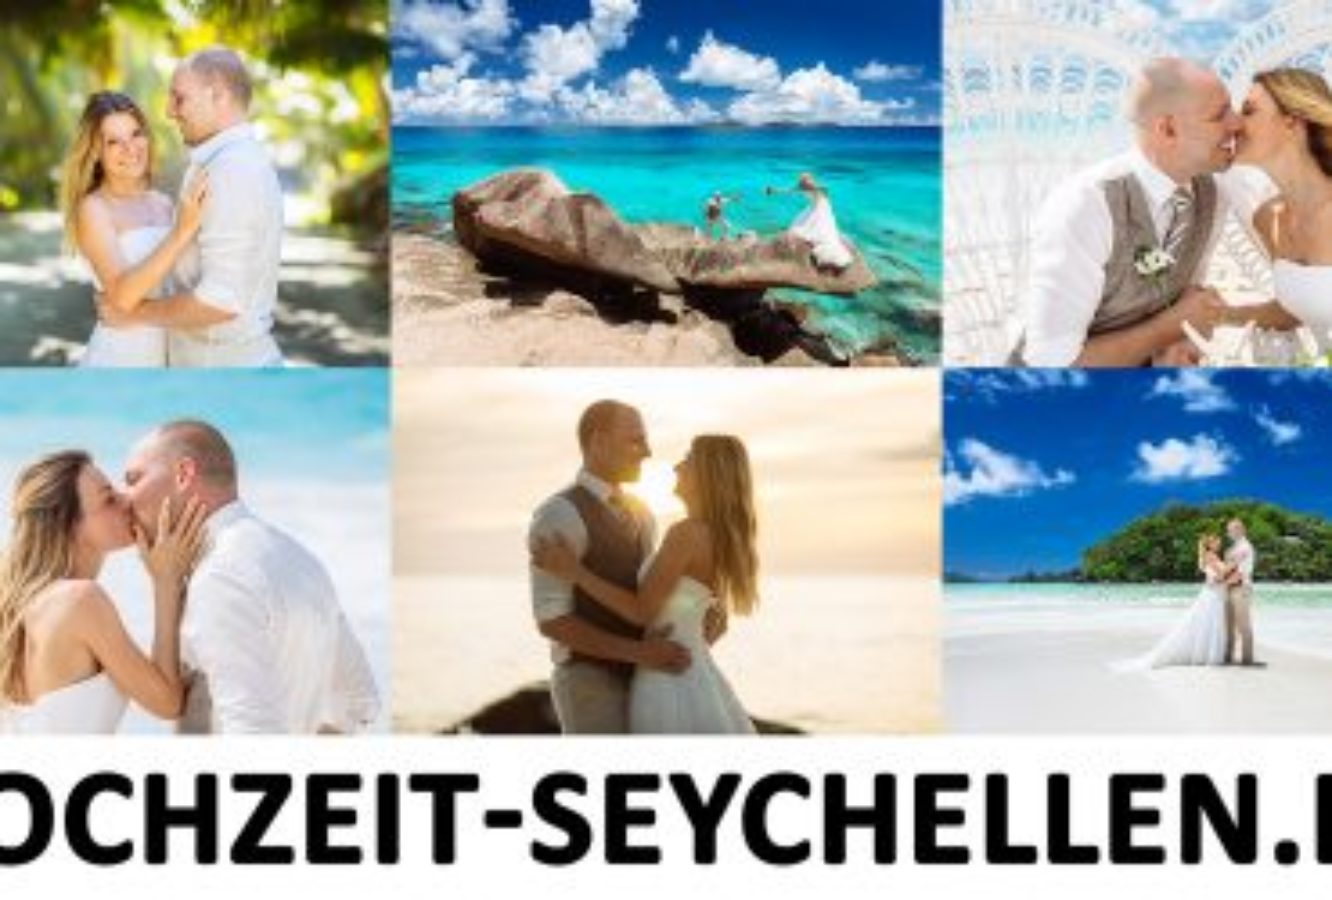 hochzeit seychellen jahresrueckblick 2015 31